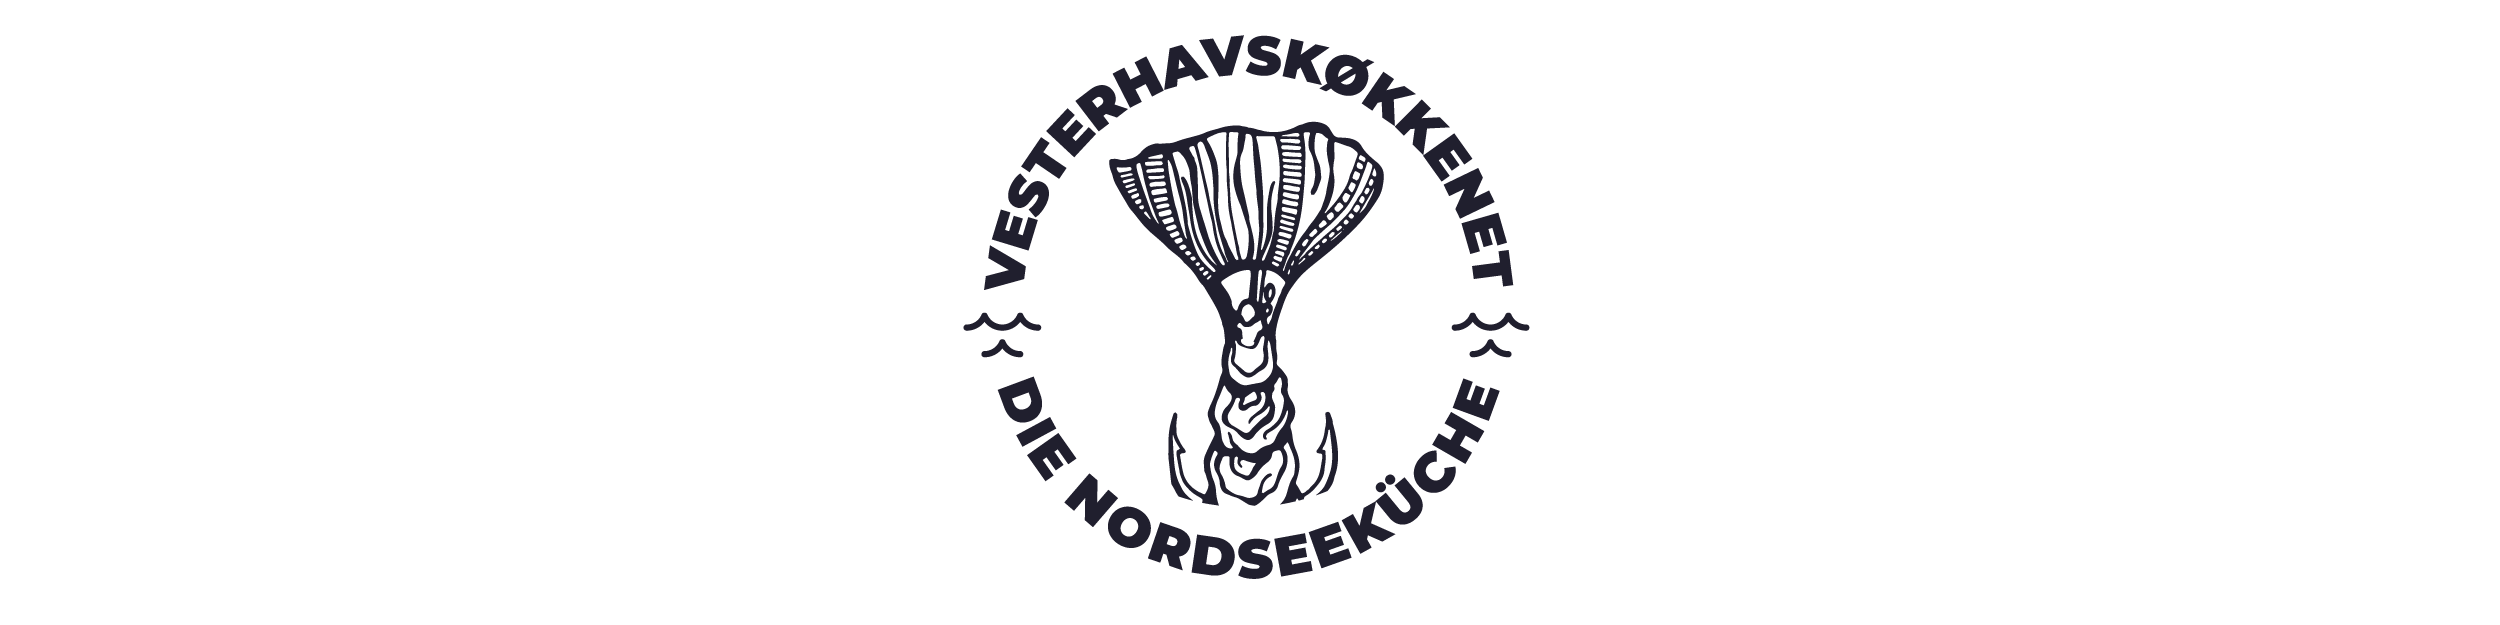 Vesterhavskøkkenet logo 